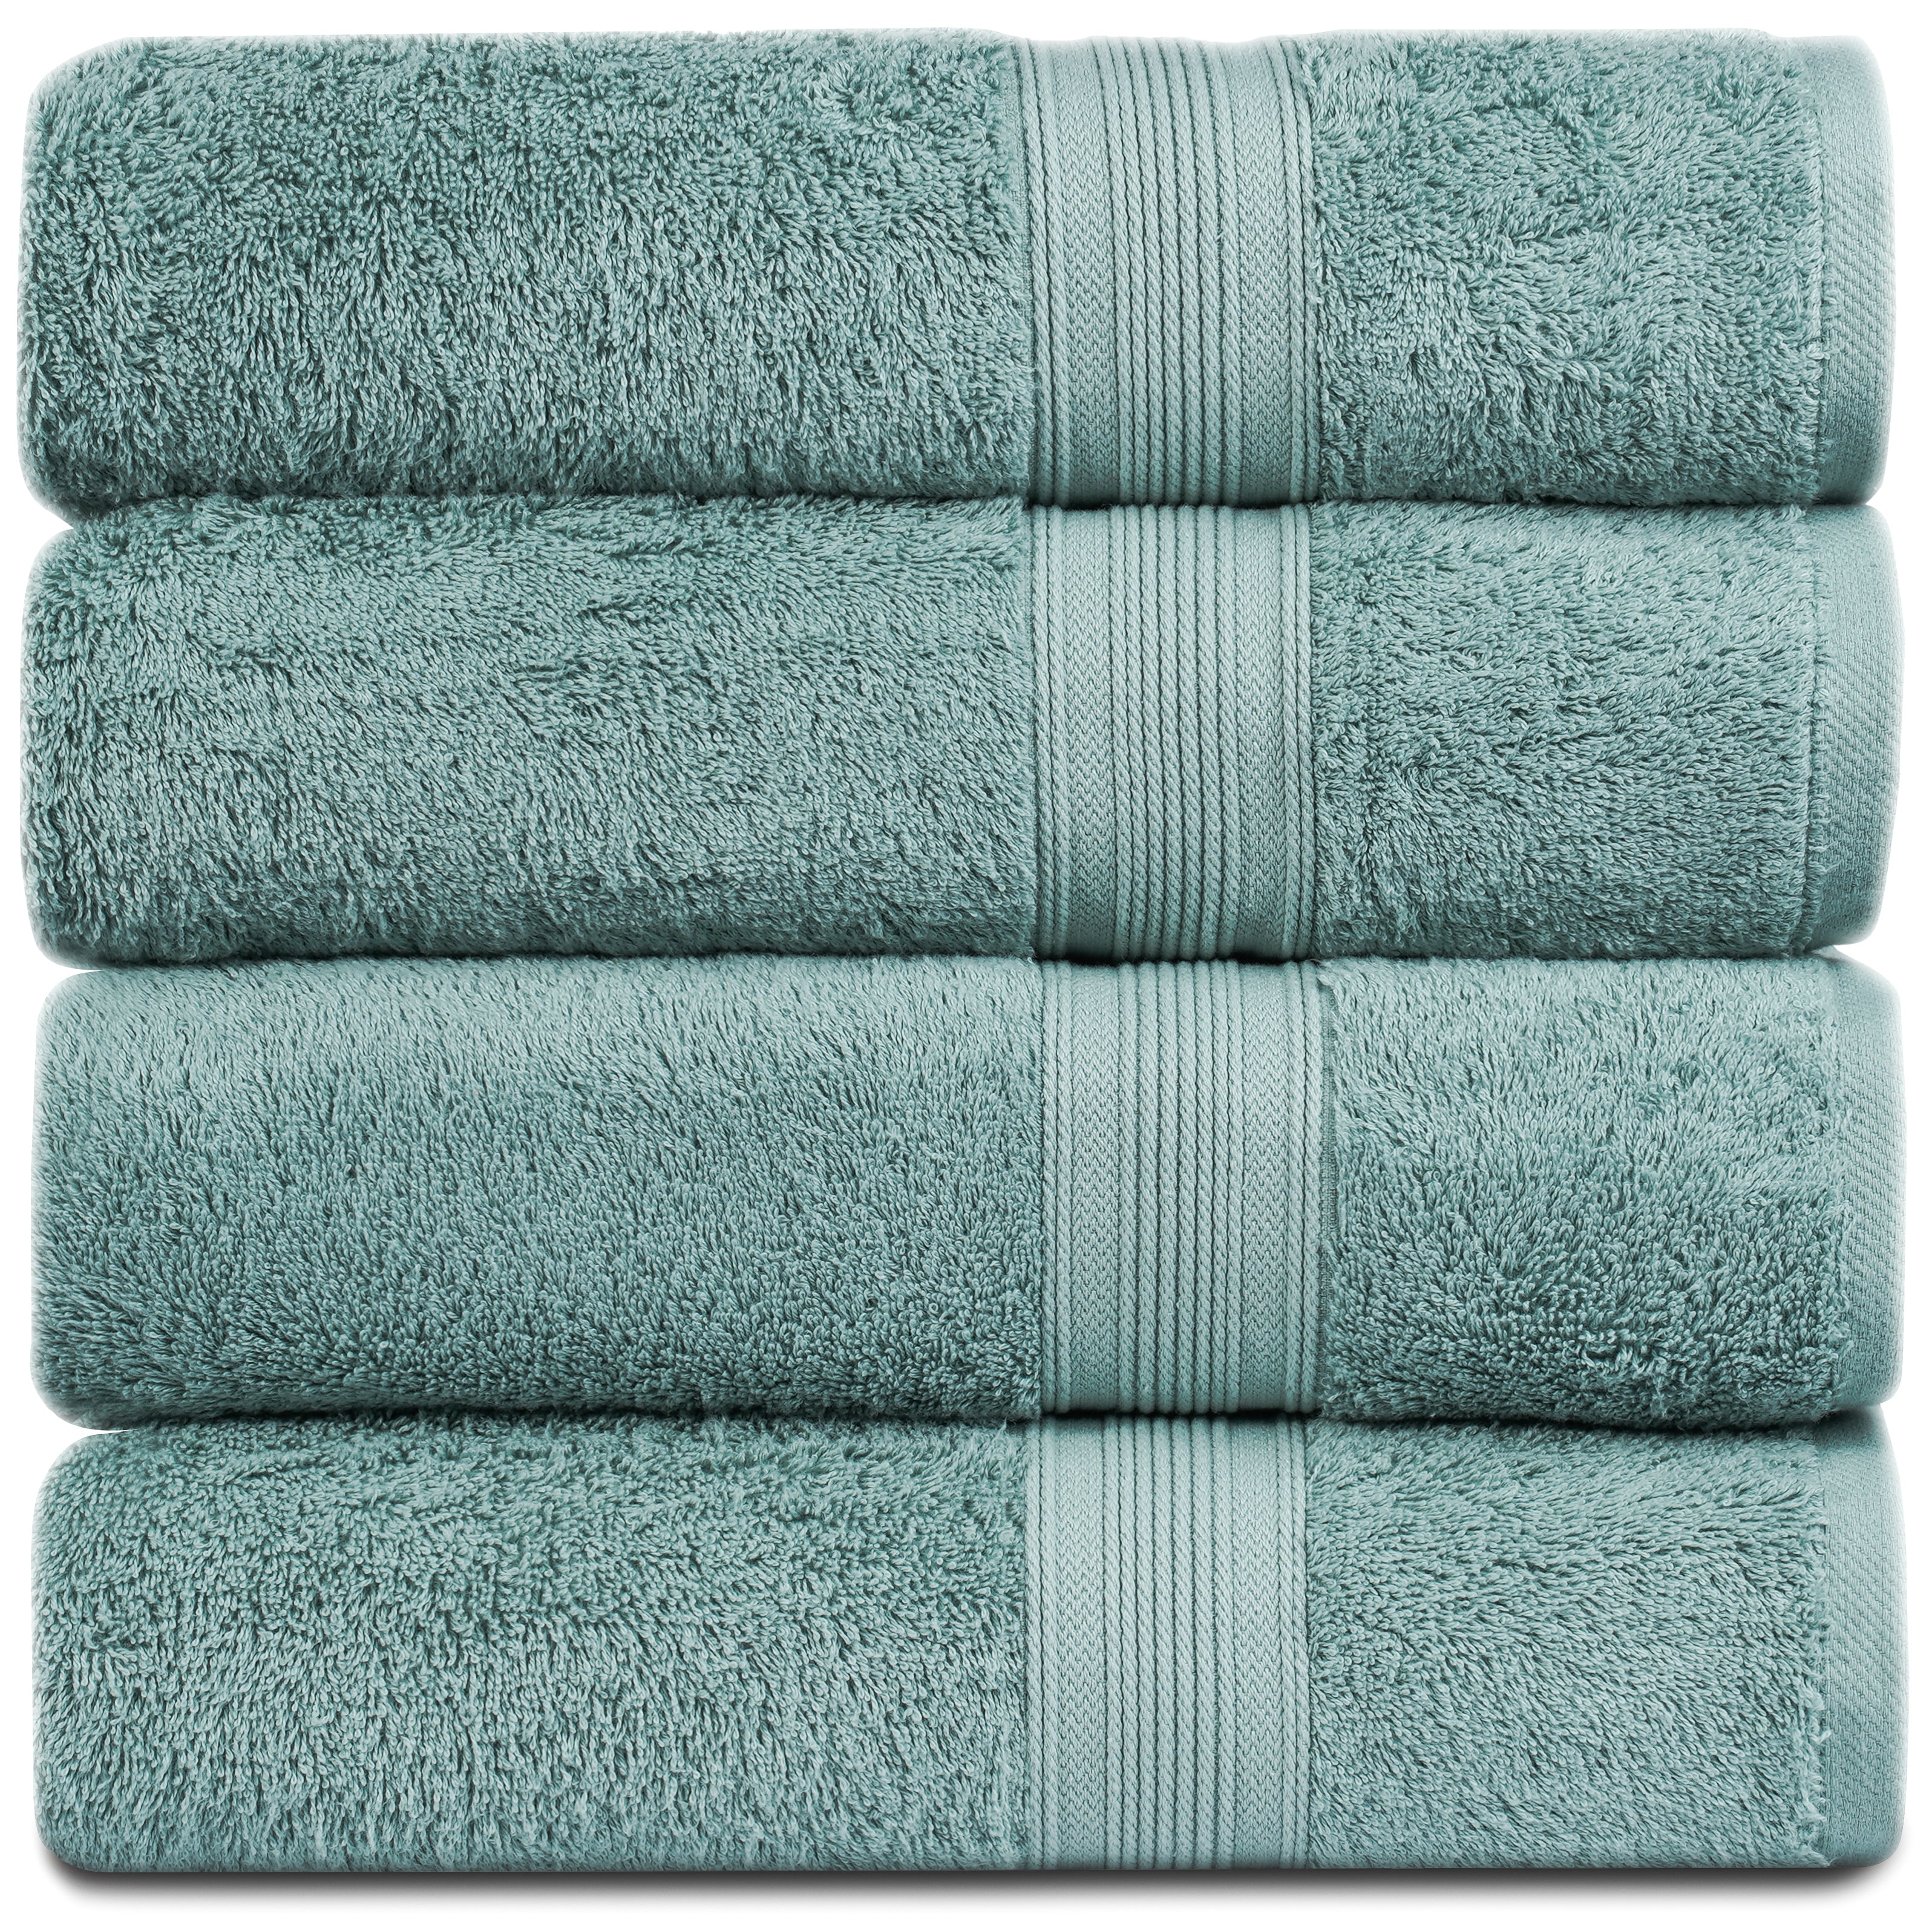 Bourgeois - 4 Piece Bath Towel Set